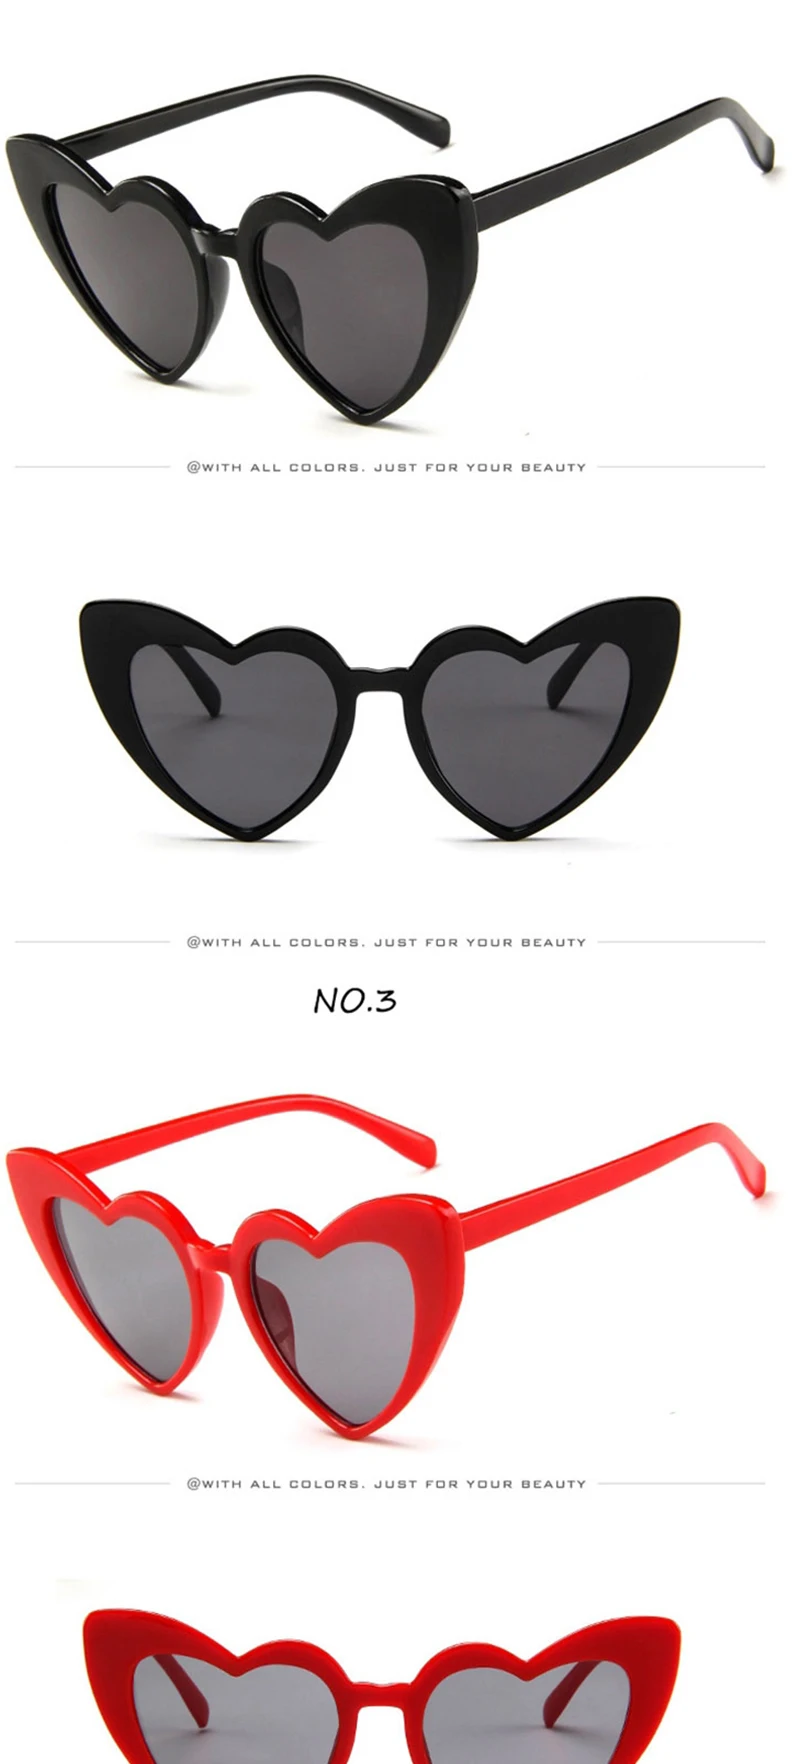 Yoovos рисунком в виде сердца и Цвета солнцезащитные очки Для женщин Винтаж роскошные солнцезащитные очки Пластик классический ретро на открытом воздухе Oculos De Sol Gafas